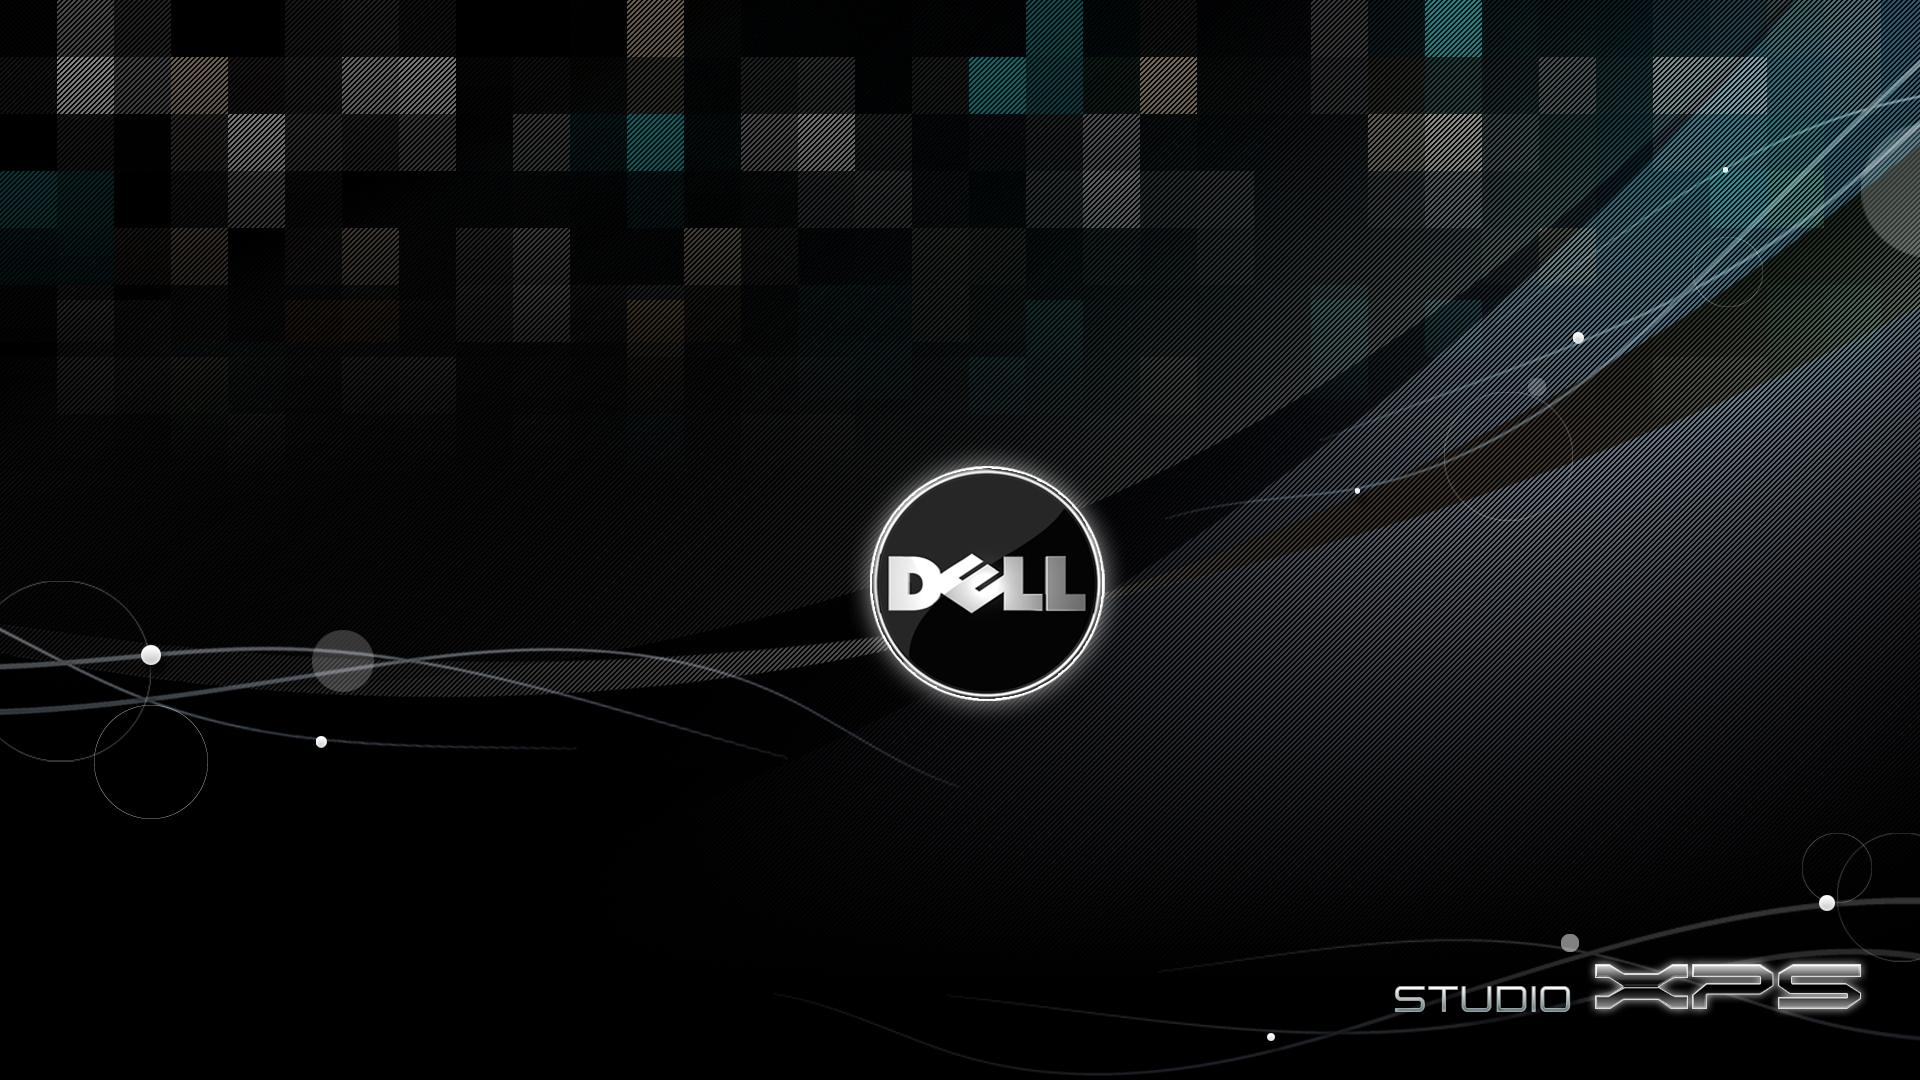 wallpaper for DELL stduio XPS 1640 Dell